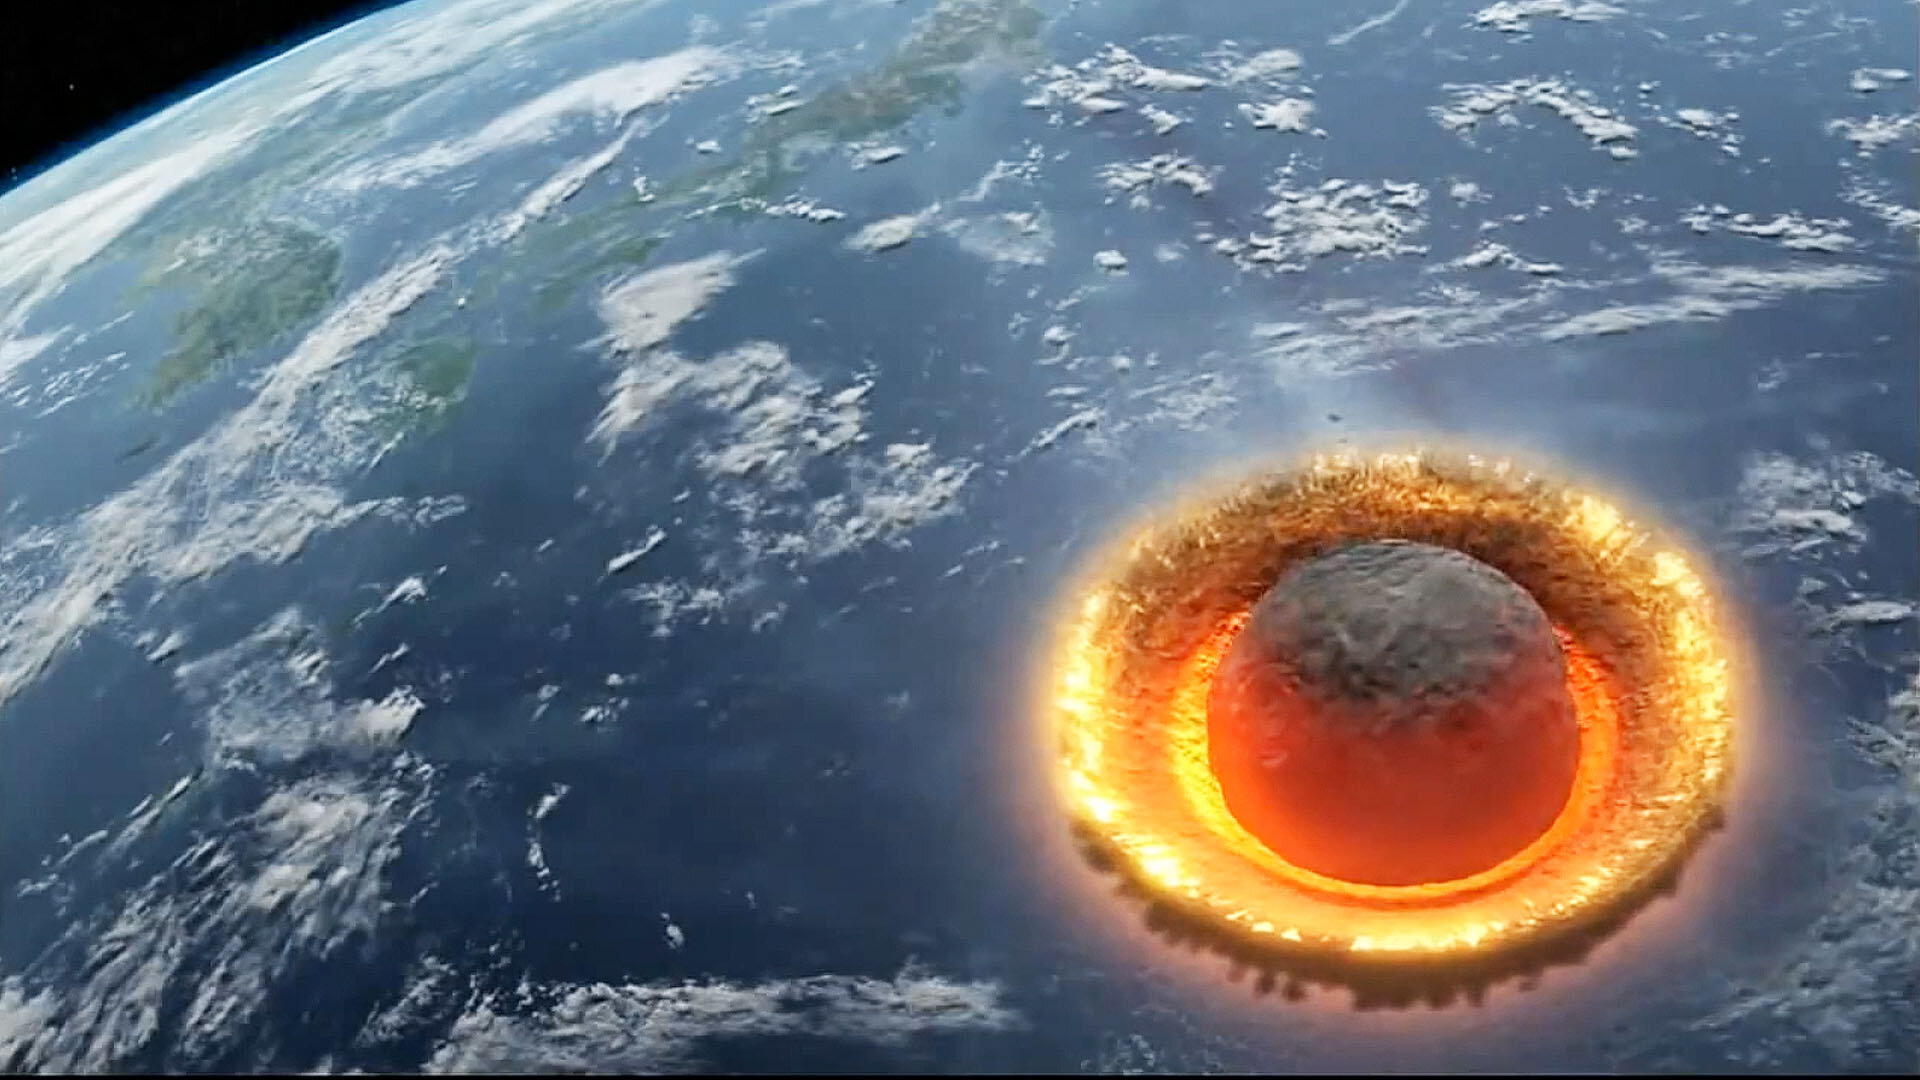 Η NASA εντόπισε έναν «δυνητικά επικίνδυνο» αστεροειδή που πλησιάζει ταχύτατα τη Γη